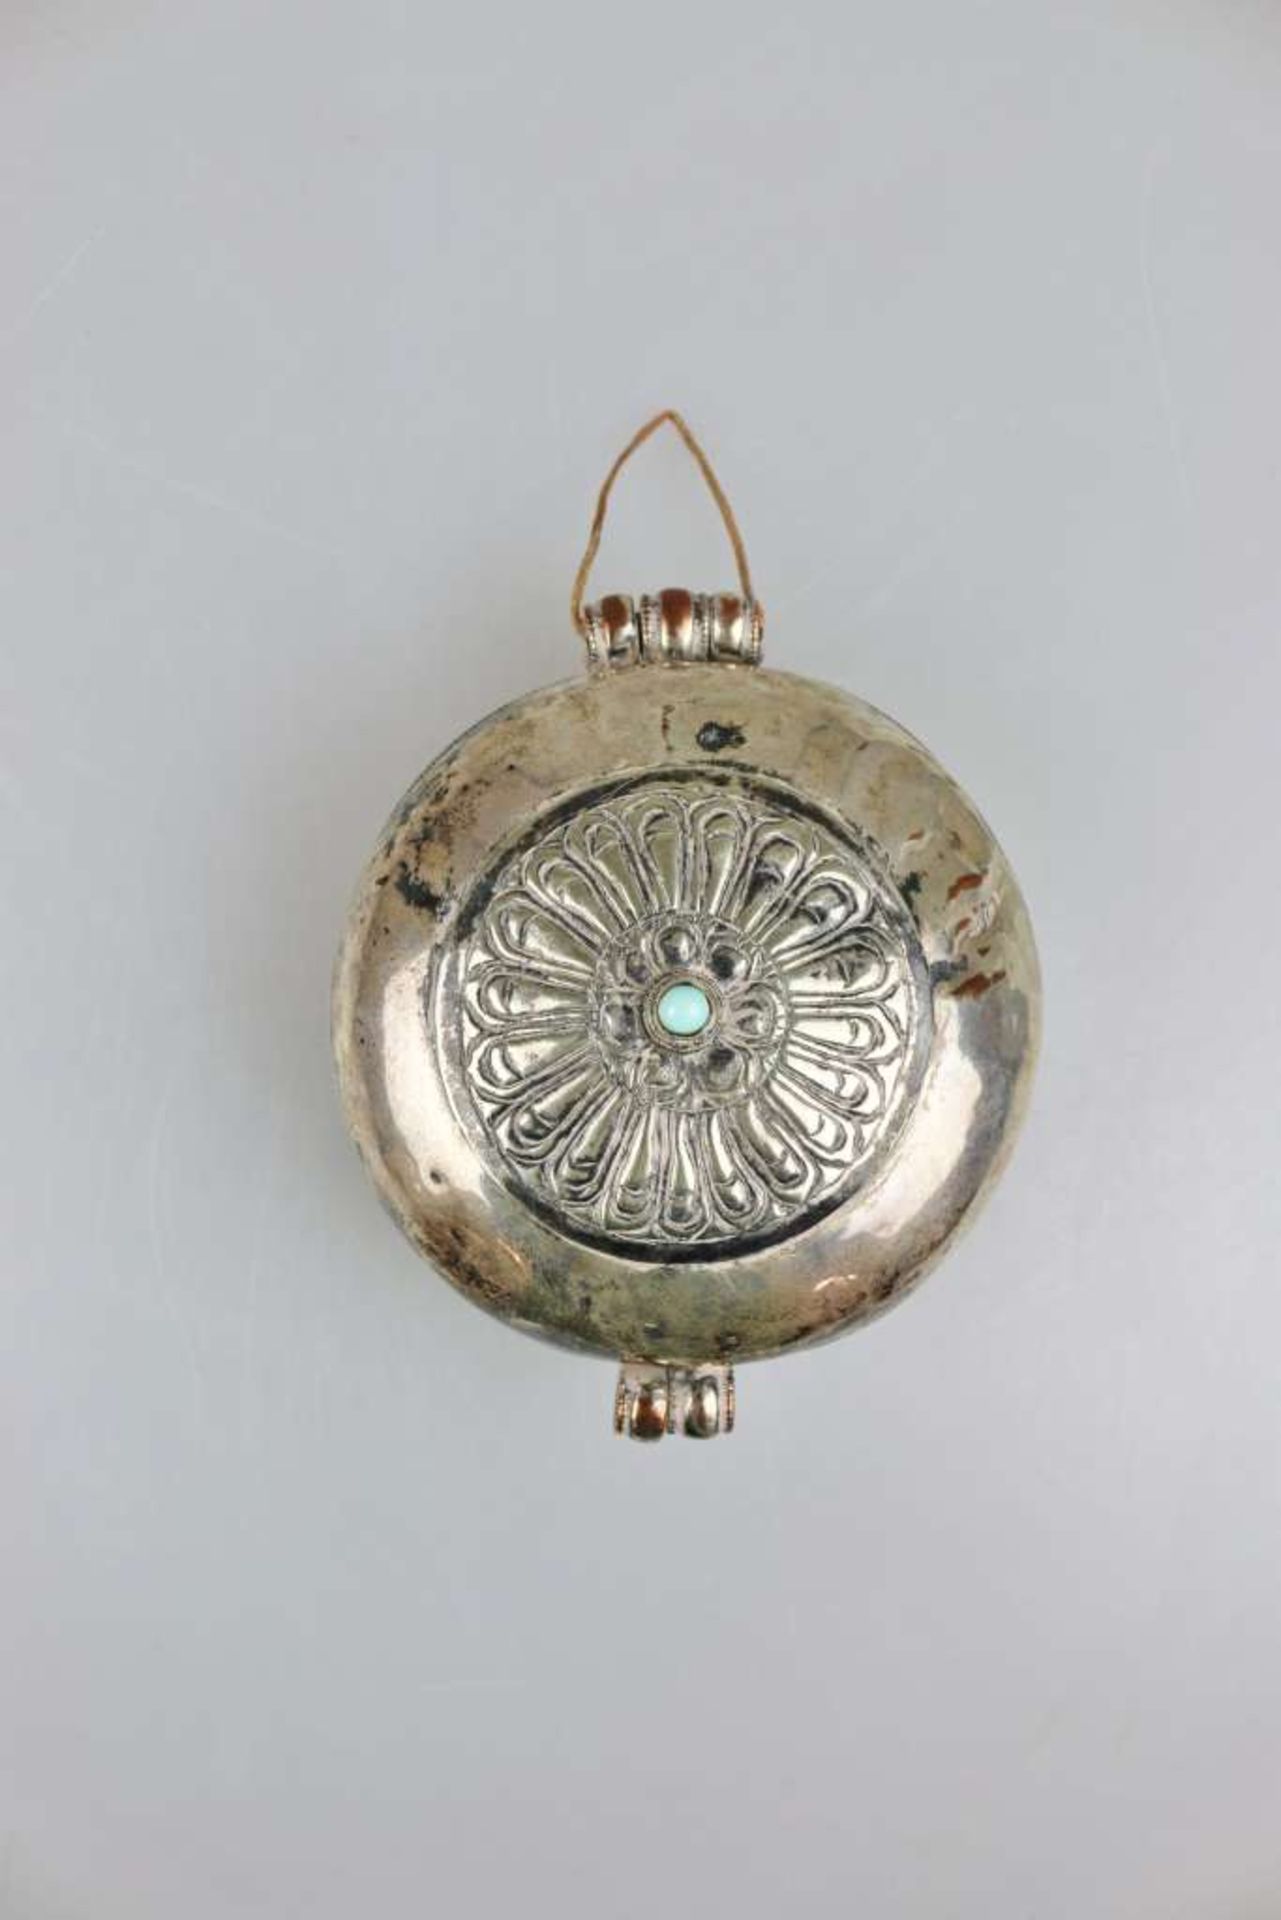 Amulettbehälter 'Gau', Tibet 19./20. Jh., runde Form, Deckel verziert, mittig ein aufgesetzter